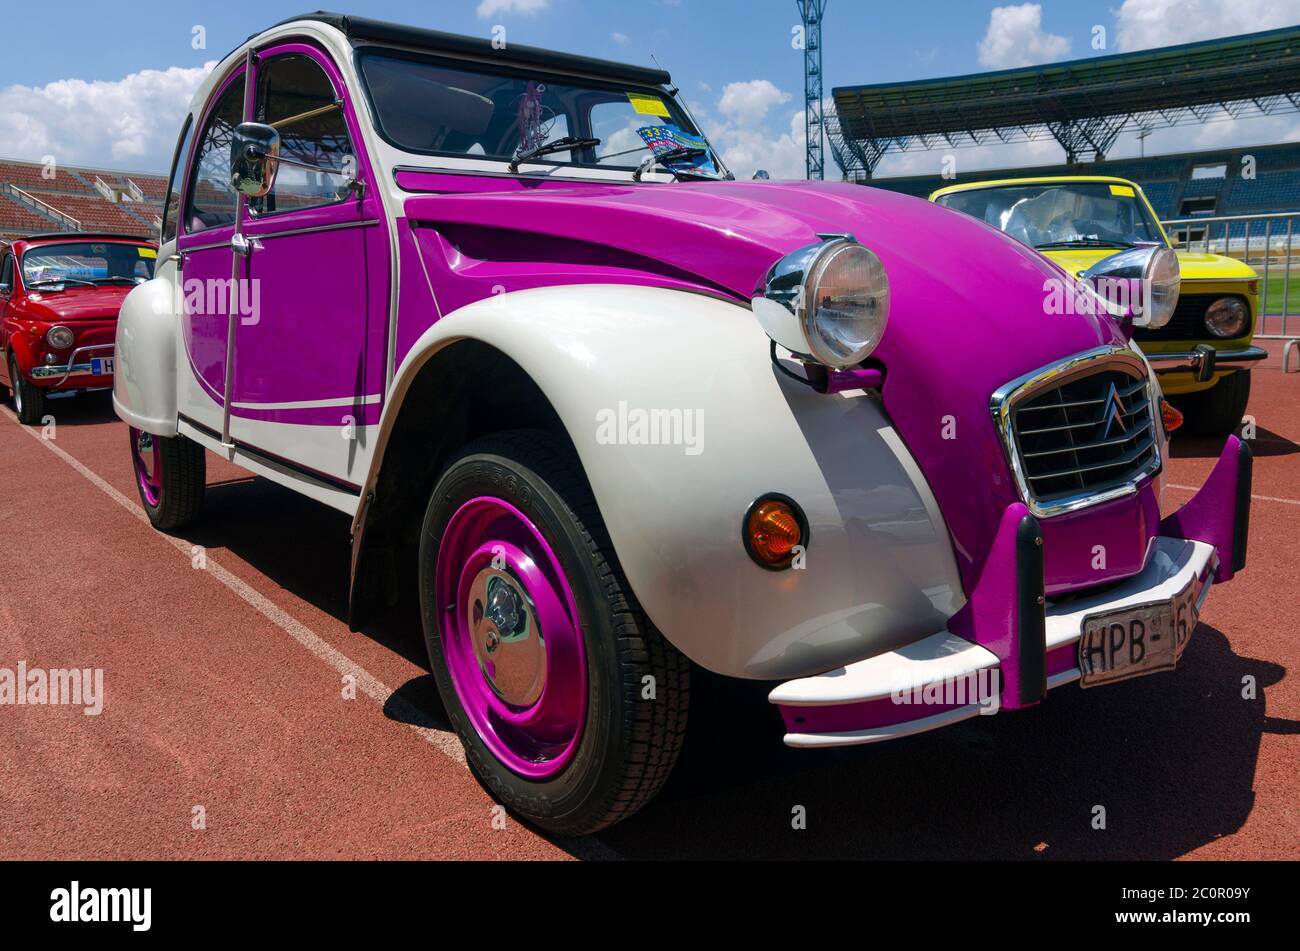 Héraklion, Crète / Grèce. Image d'un ancien violet et blanc, quatre portes décapotable Citroën 2CV garée dans le stade de Pancretan pour un spectacle de voitures vintag Banque D'Images